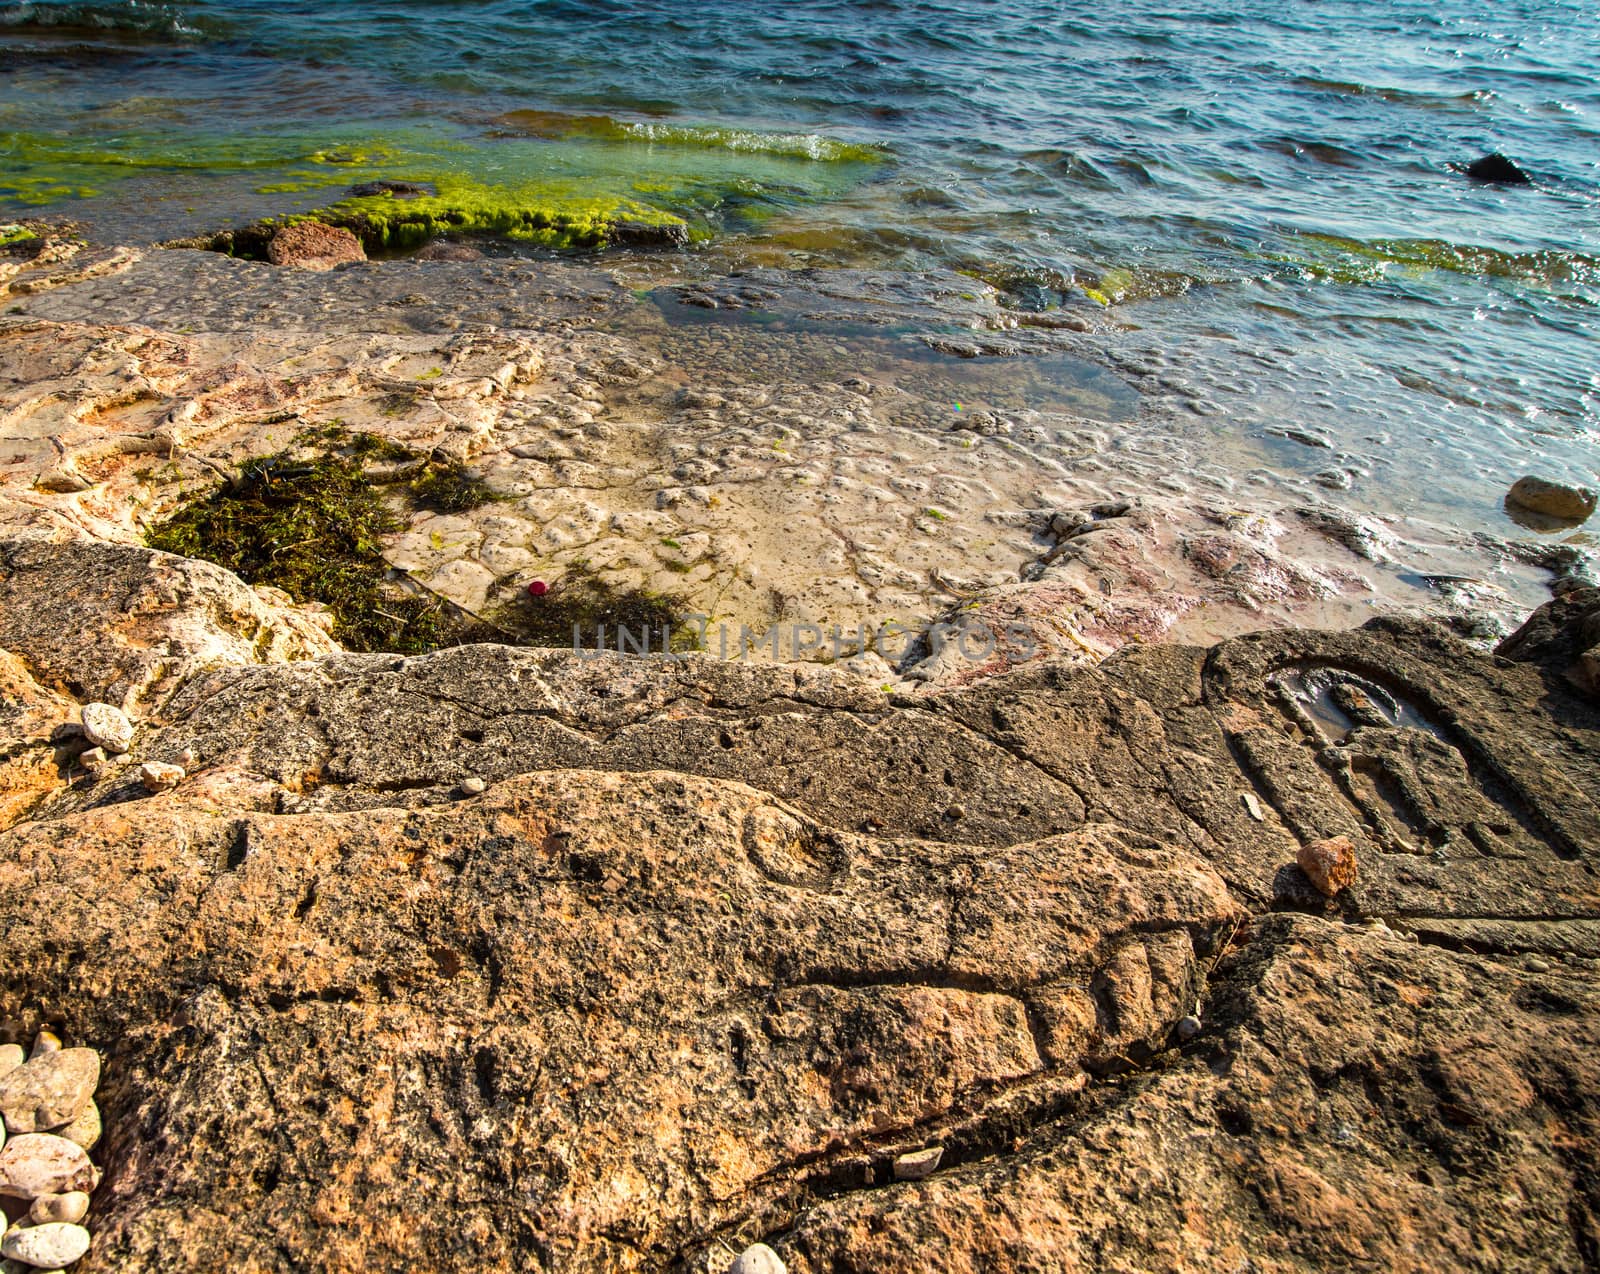 Rock carvings on the beach (dog head) near Sevastopol (Crimea), Ukraine, May 2013